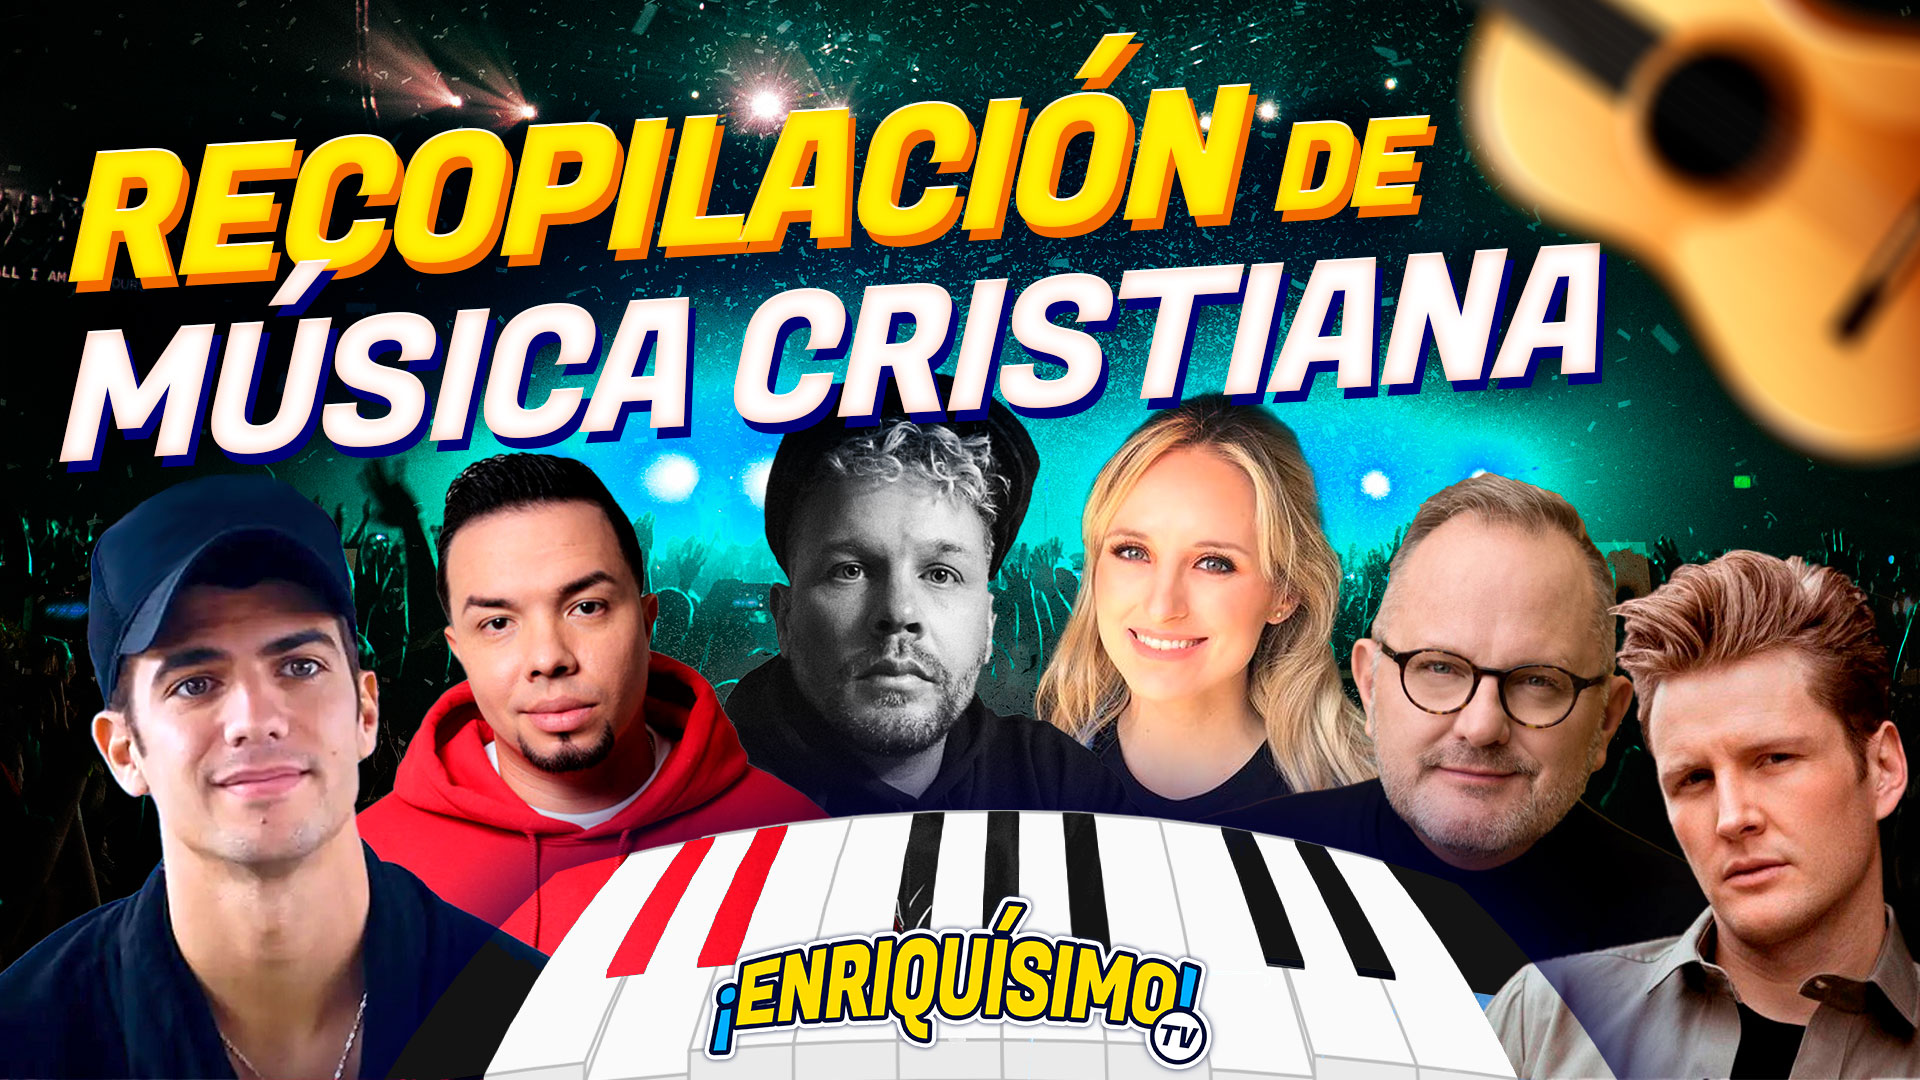 Recopilación música cristiana. Enriquísimo Tv canal católico de YouTube y Tik Tok. Enrique Vidal Flores